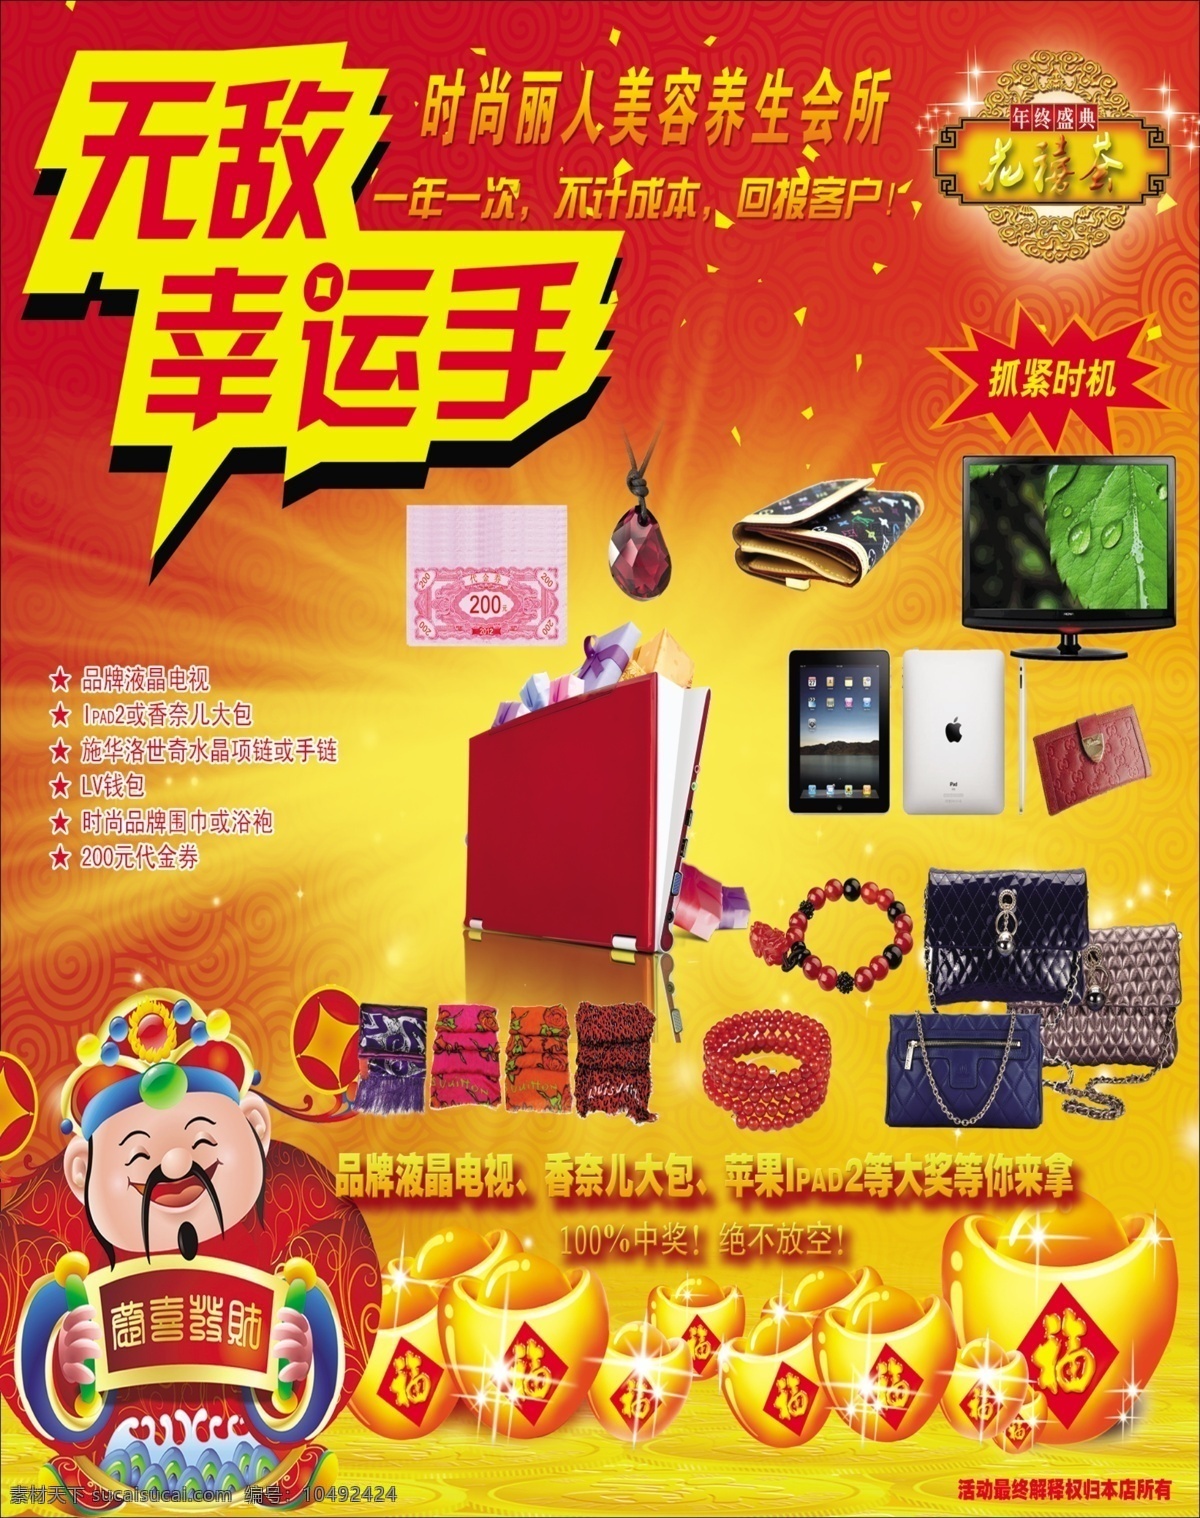 养生 会所 笔记本 财神 电脑 广告 广告设计模板 幸运 养生会所 中国红 海报 源文件 其他海报设计